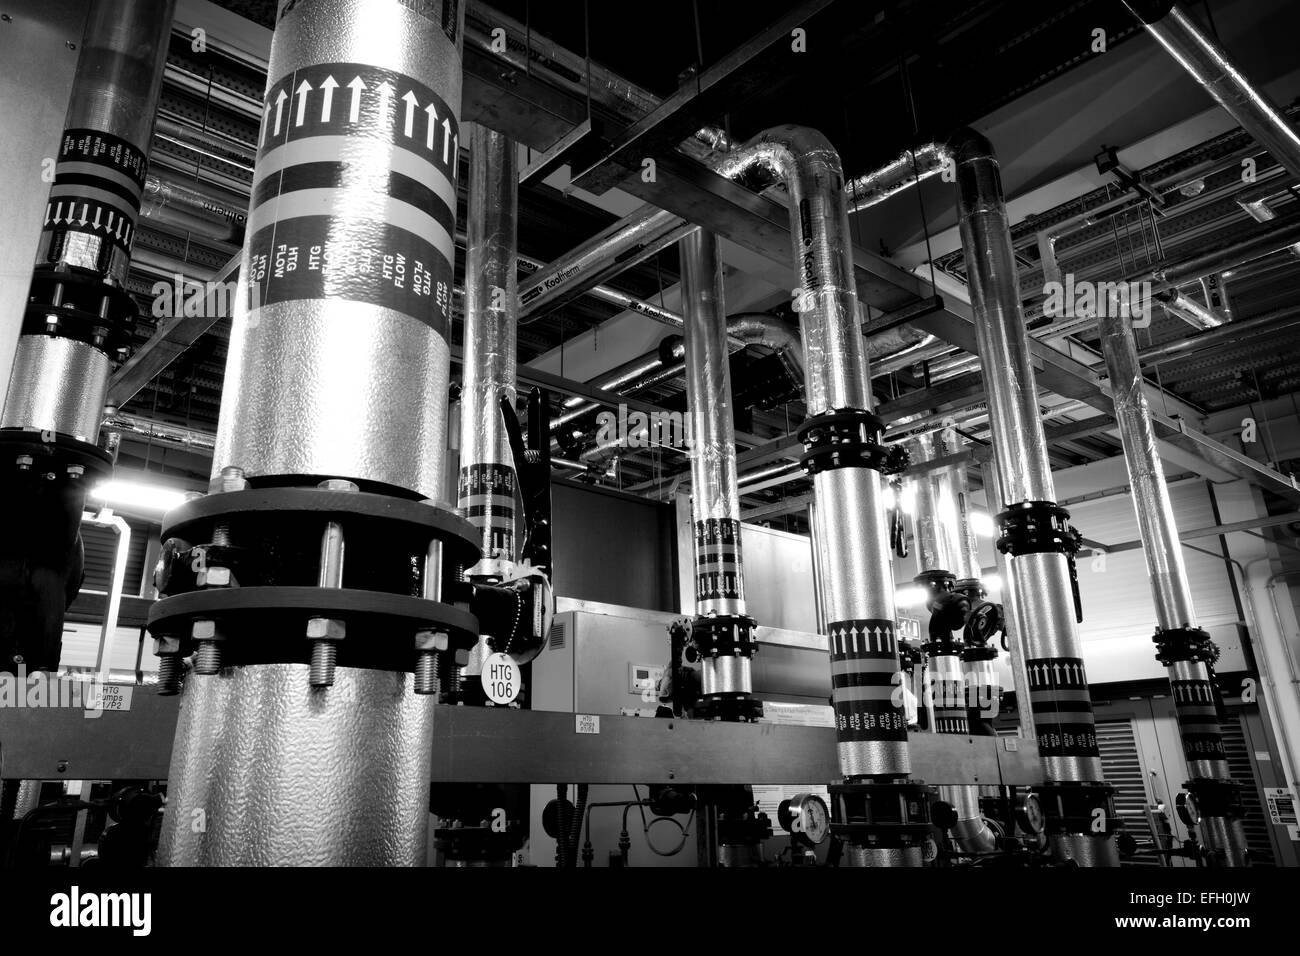 Caldaia a biomassa e piping industriale in un impianto di biomasse, in bianco e nero Foto Stock